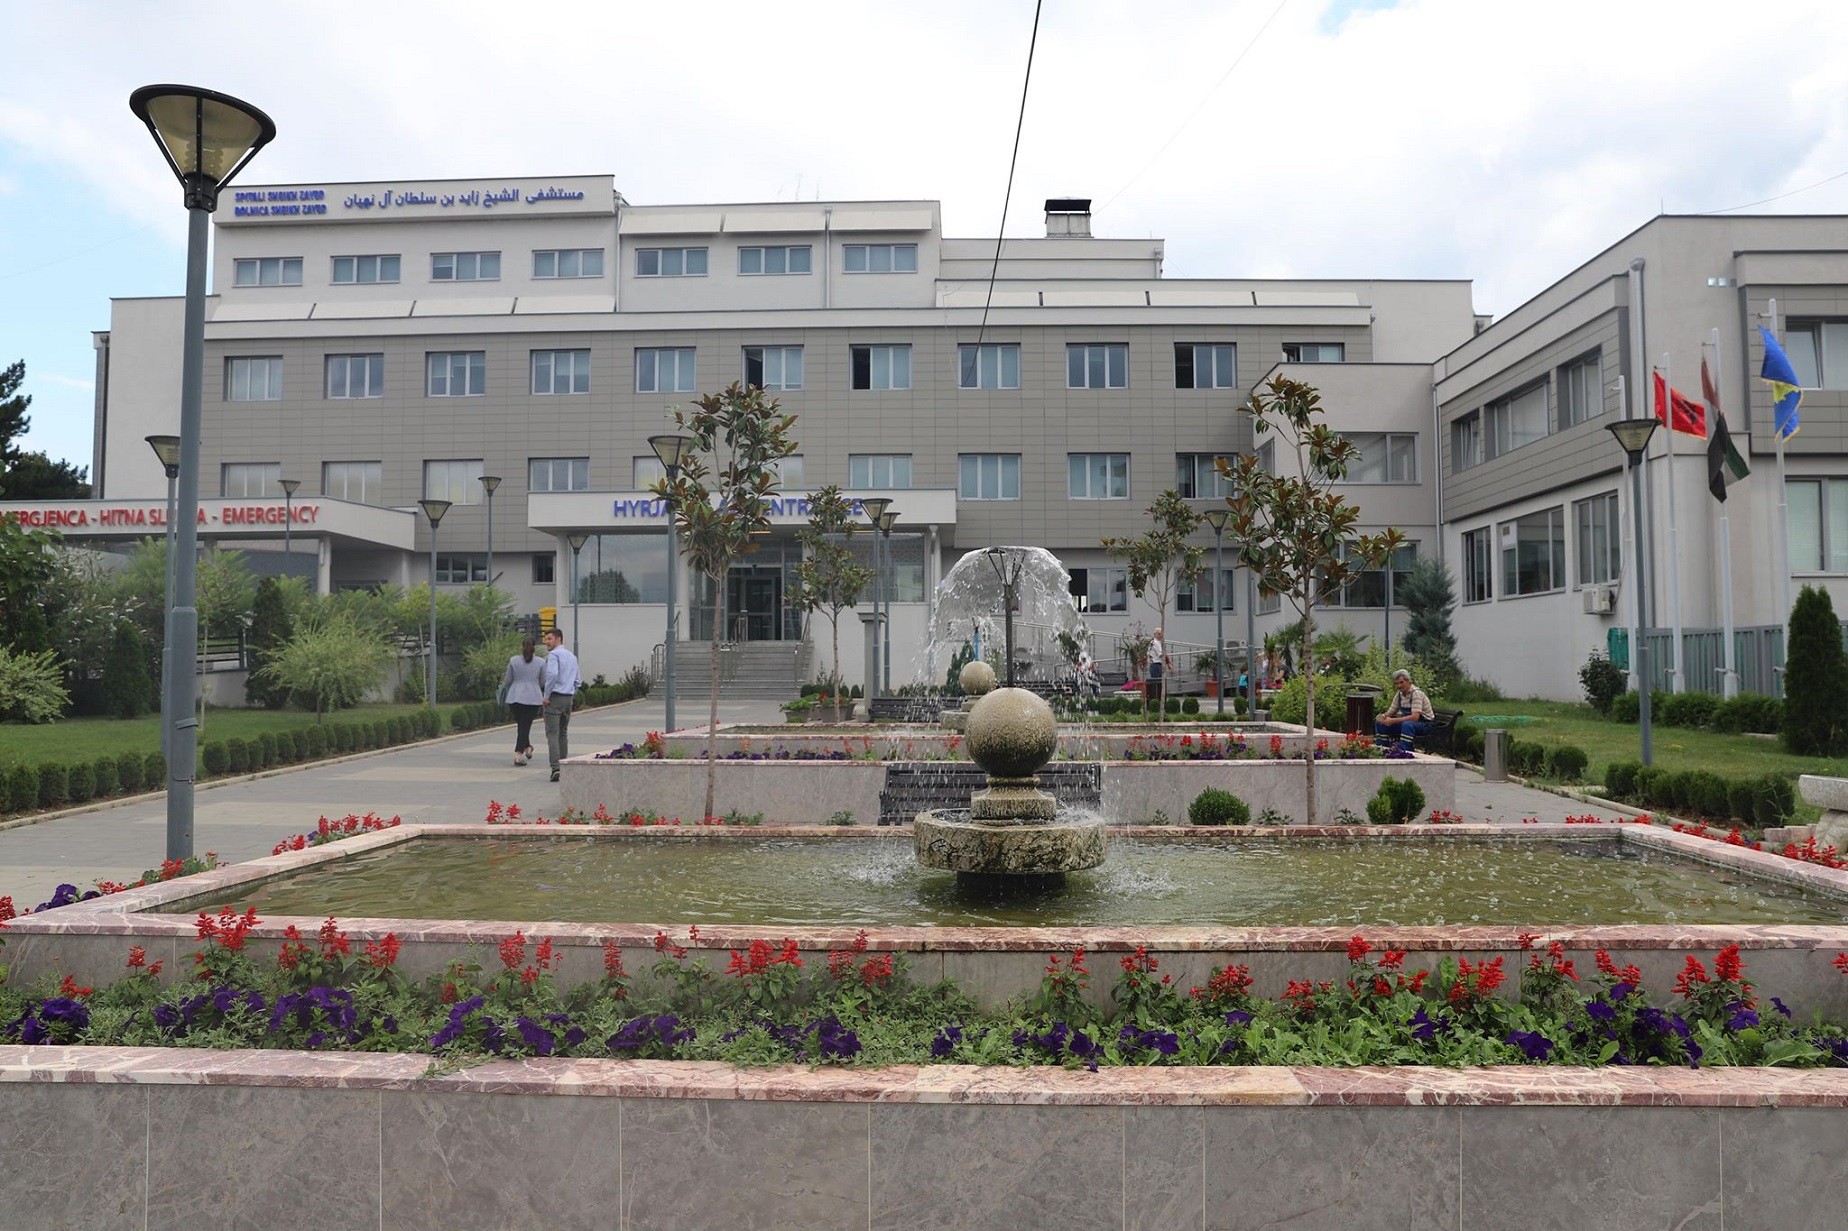 Spitali i Vushtrrisë bëhet me repart të ri të Urologjisë